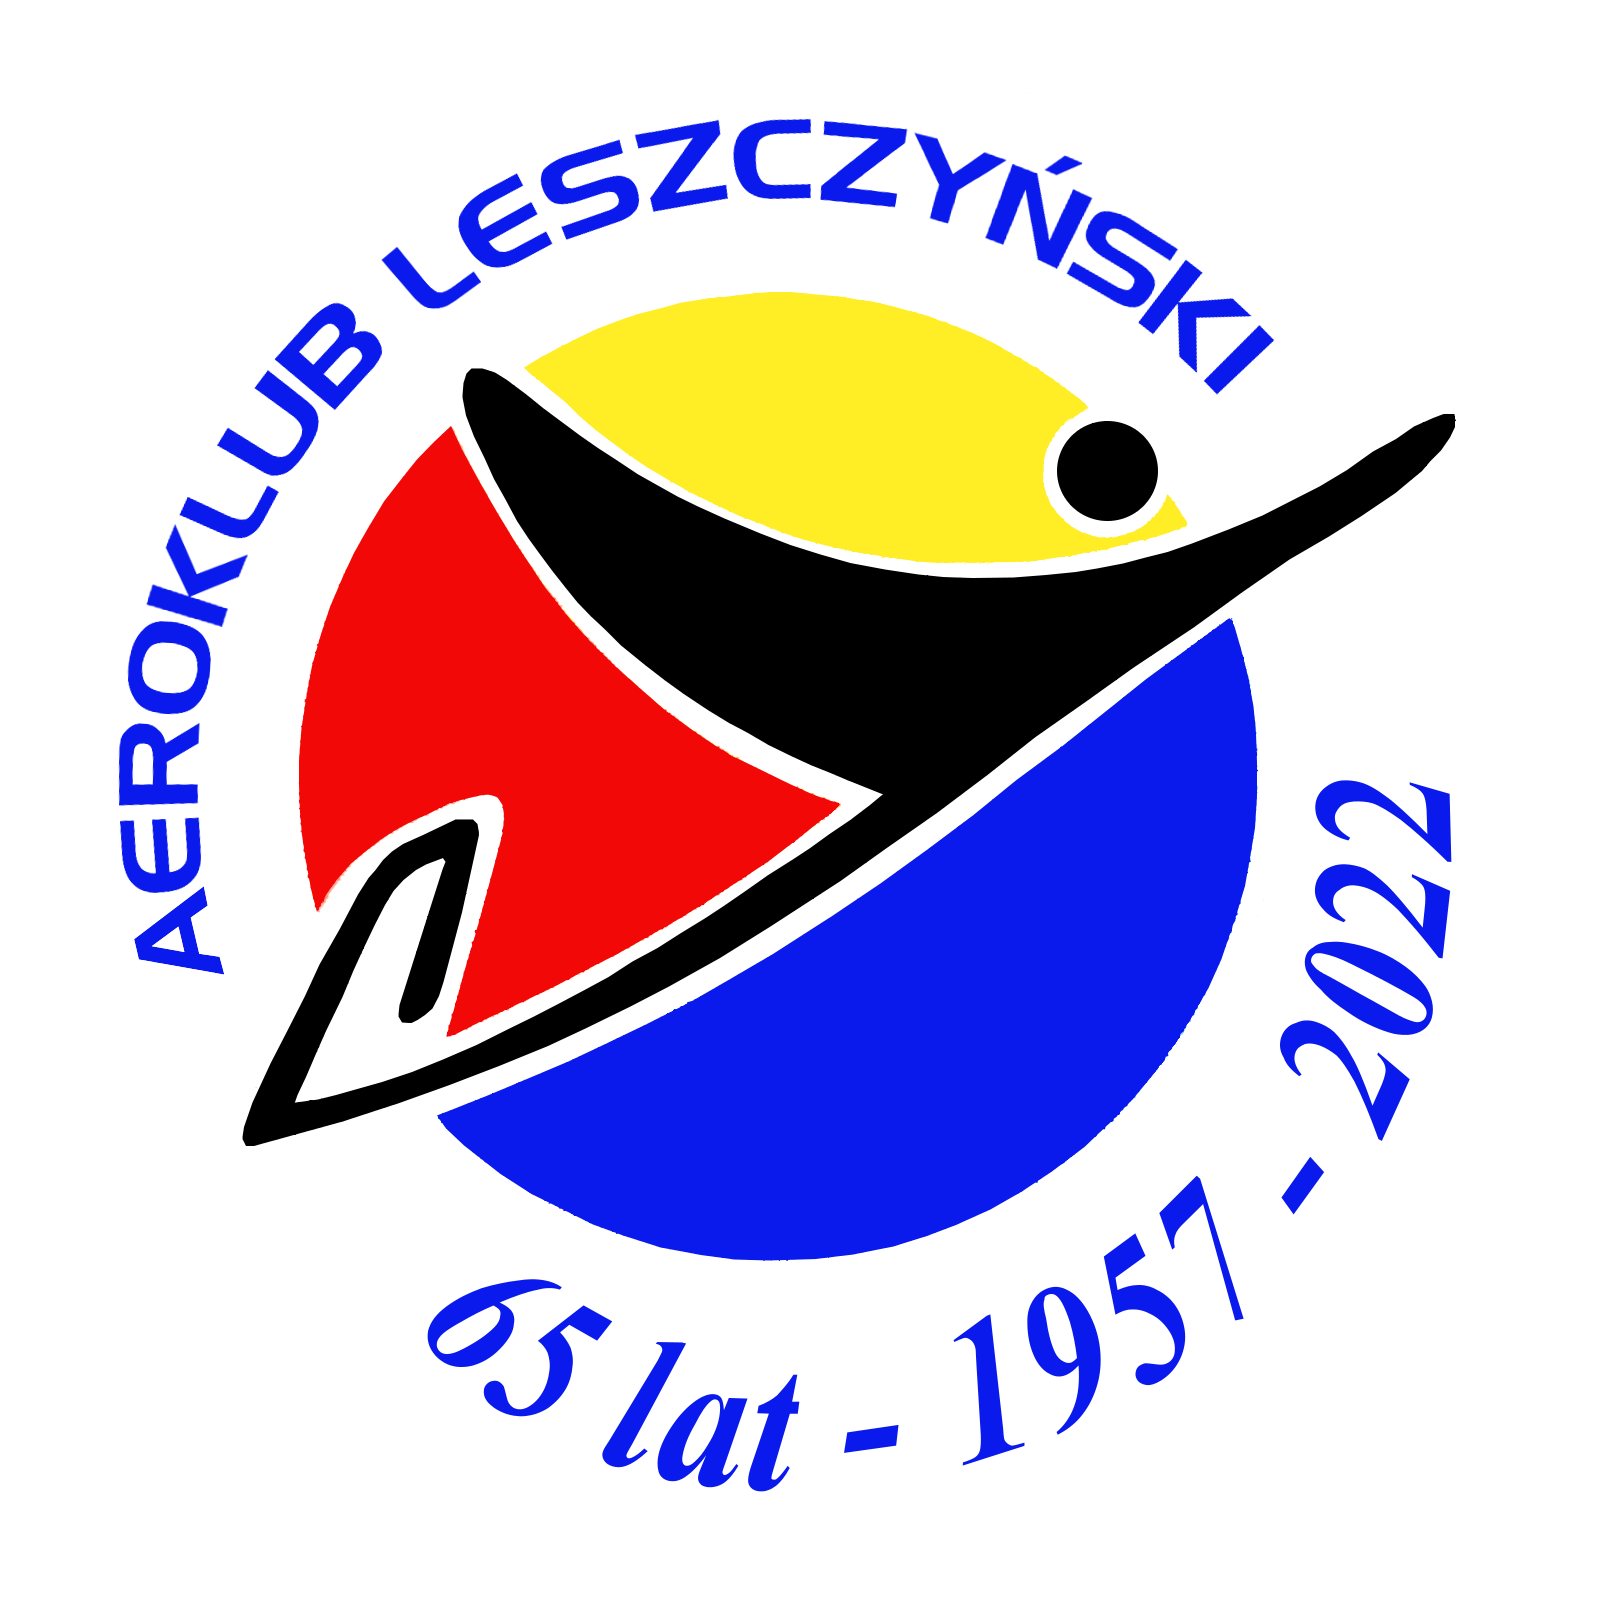 Aeroklub Leszczynski